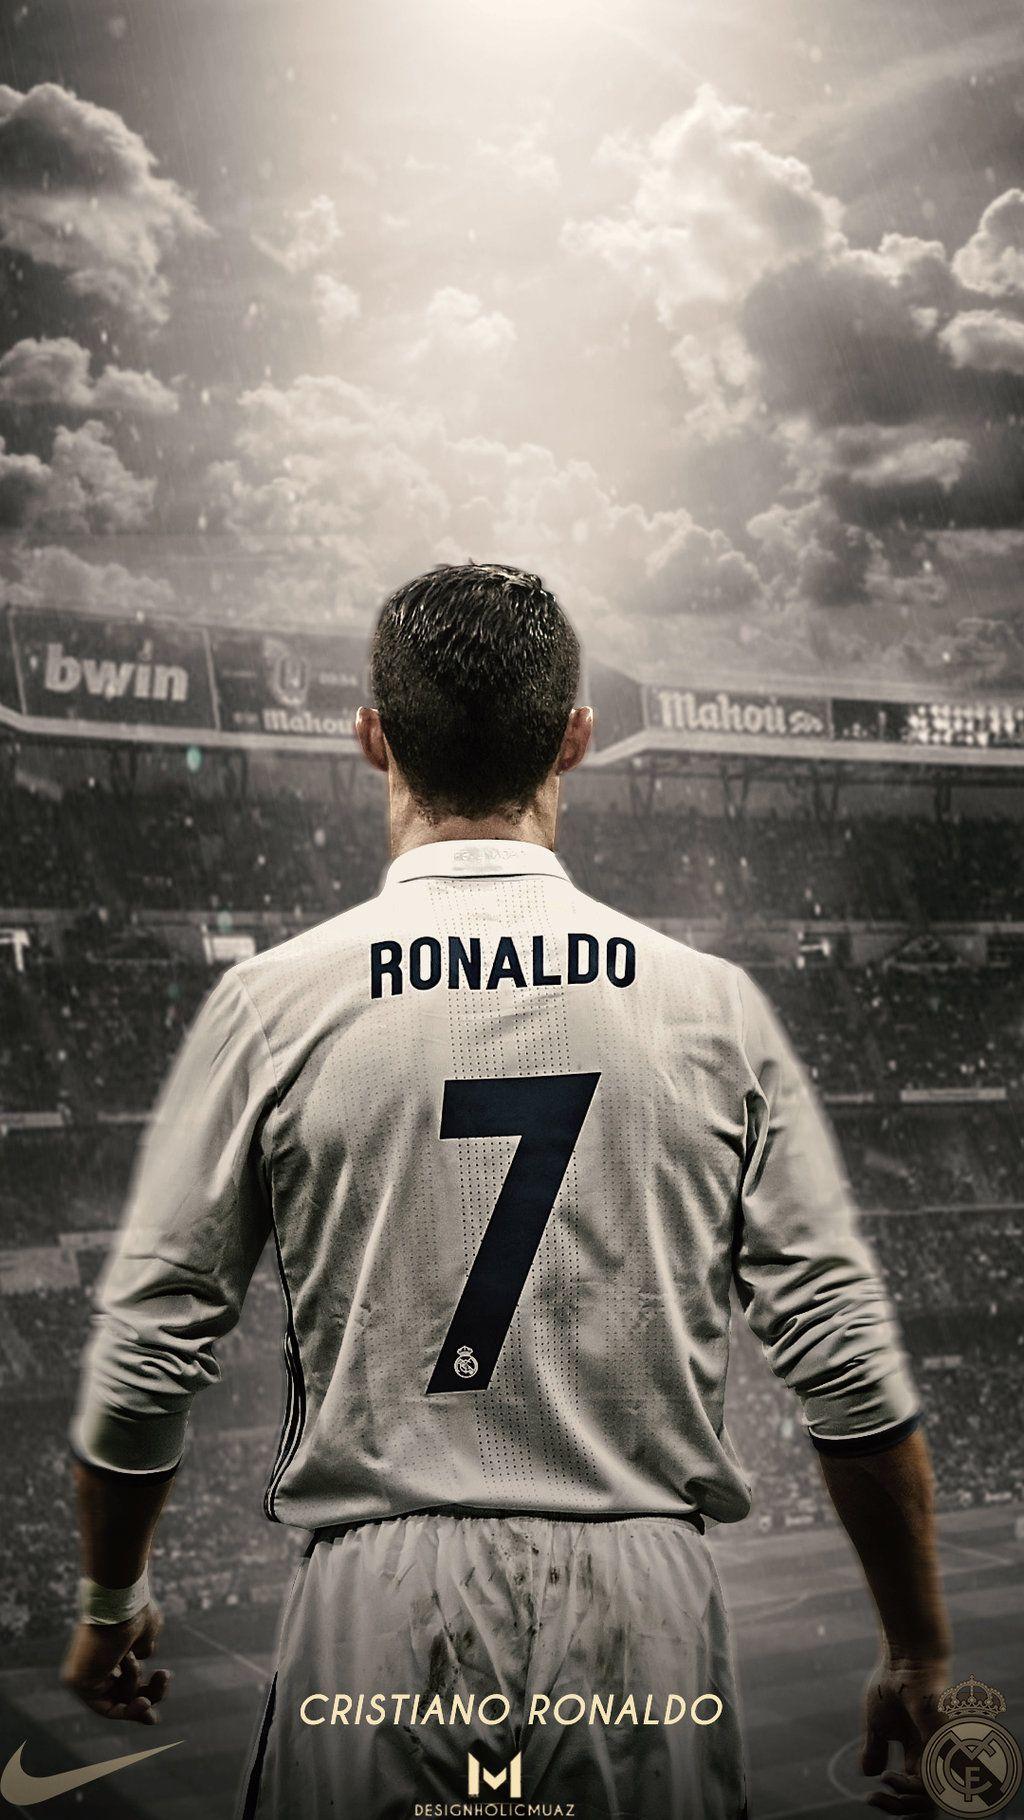 hinh nen ronaldo trong ao bo dao nha | Ronaldo, Bóng đá, Fans